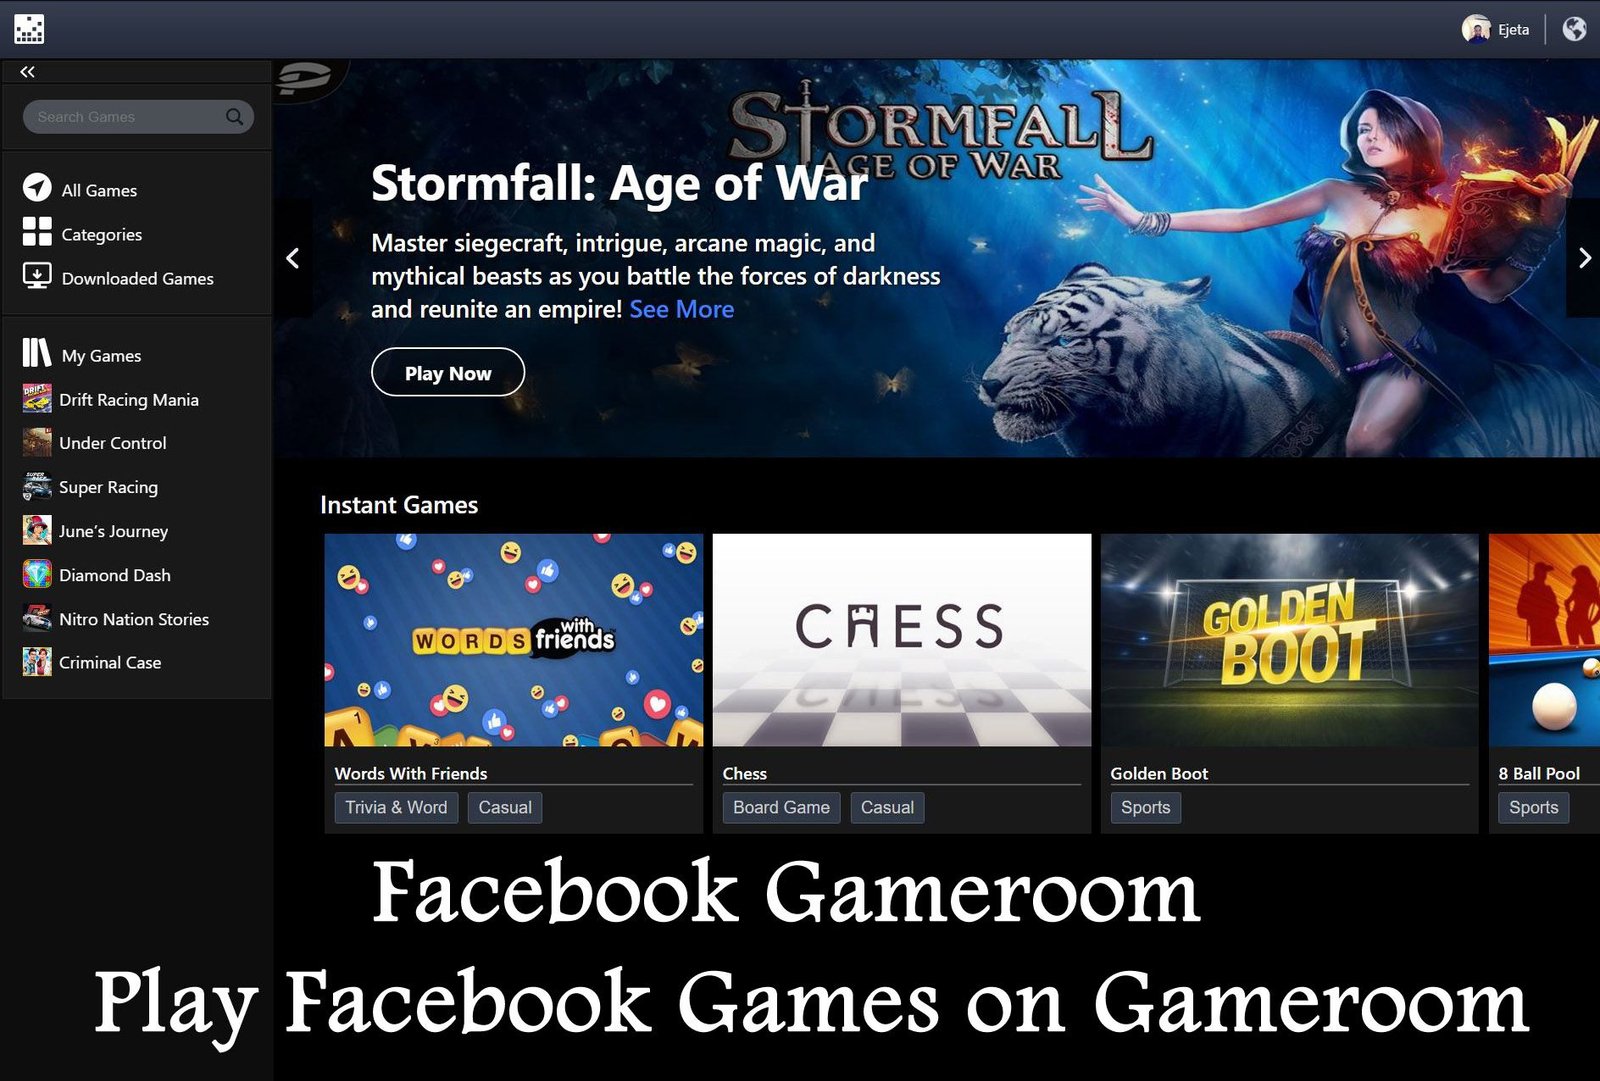 facebook gameroom download app